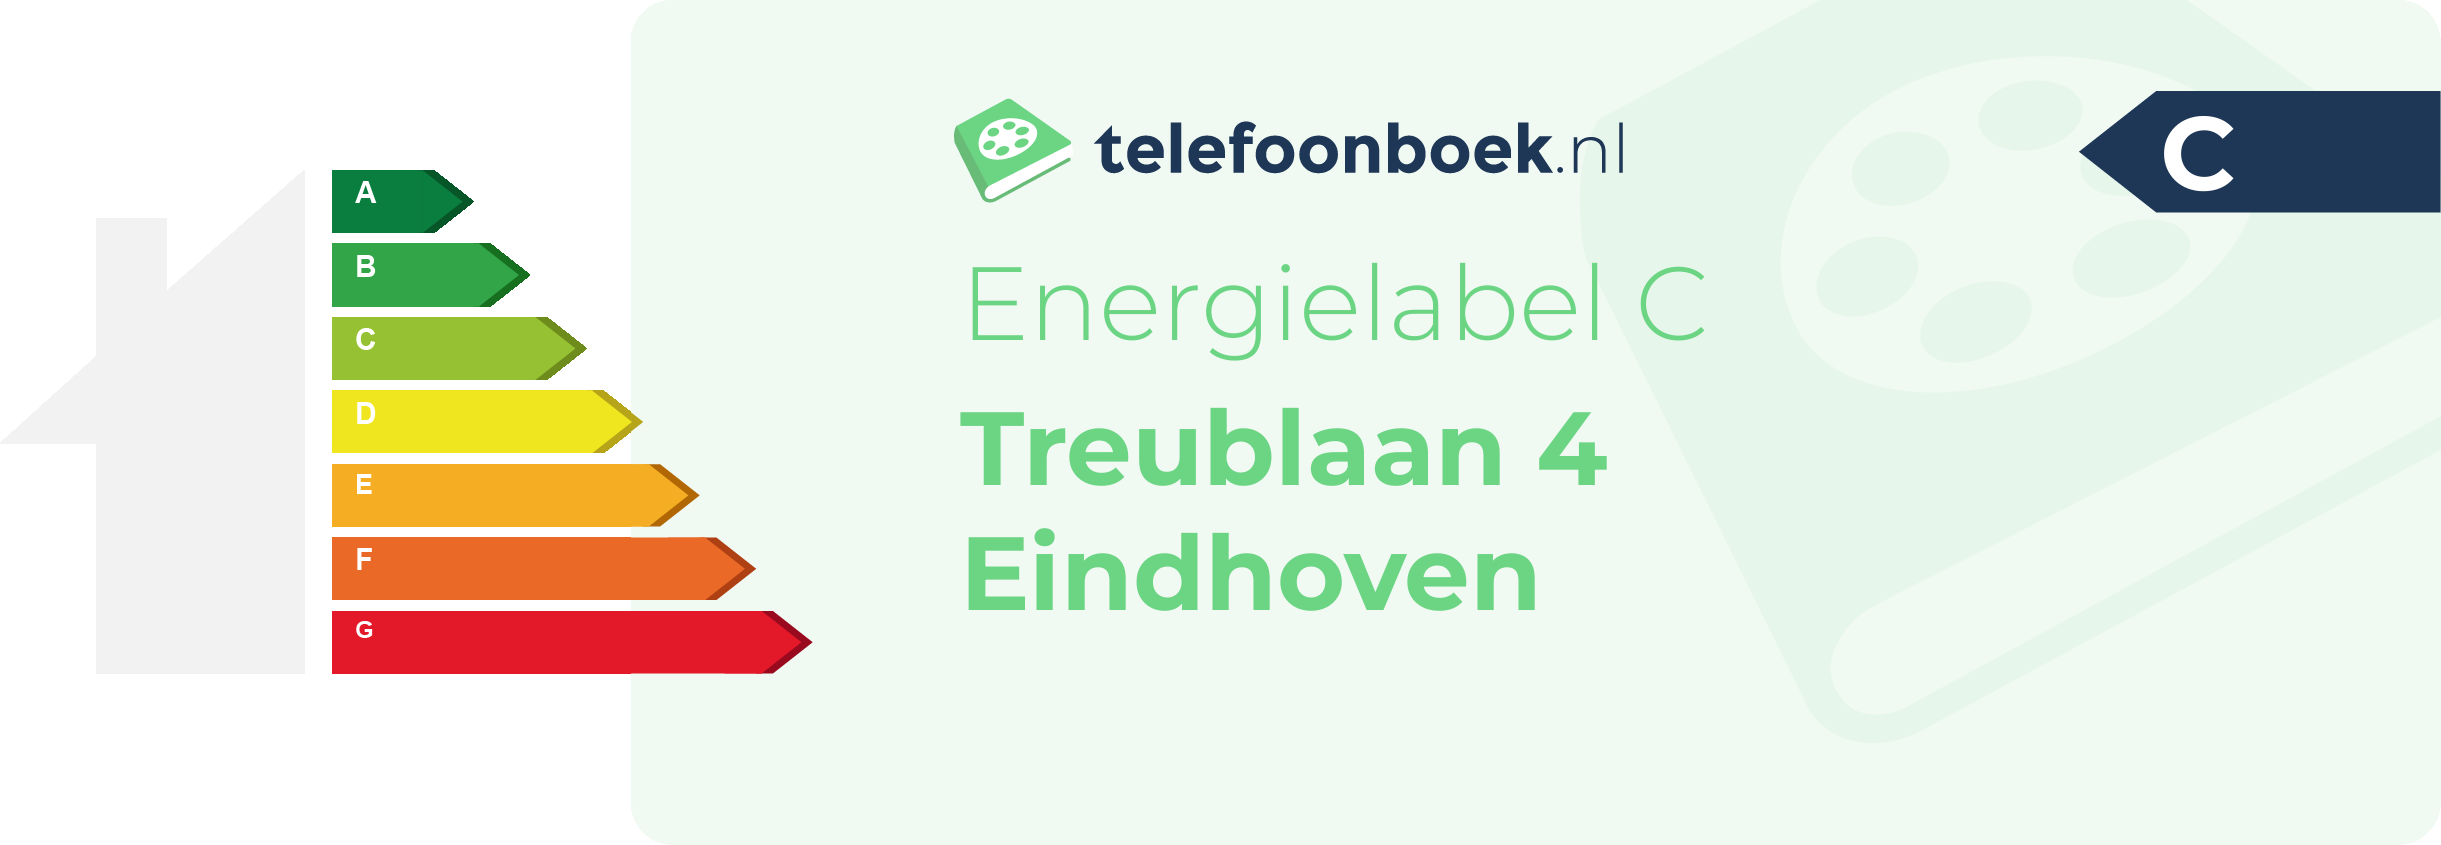 Energielabel Treublaan 4 Eindhoven